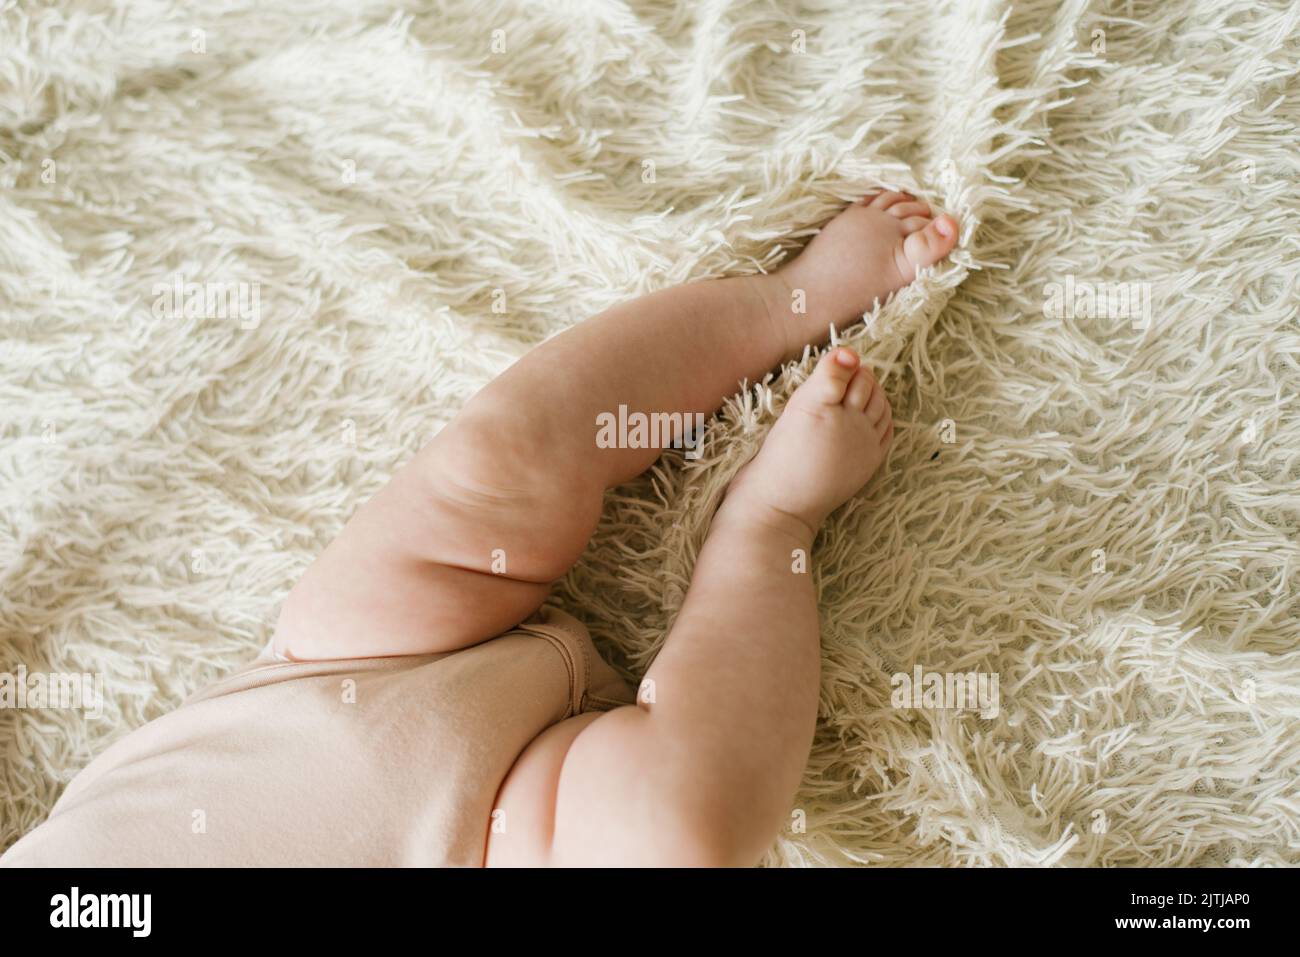 Vientre y piernas de un bebé recién nacido en un pelele acostado en una cama ligera, vista superior Foto de stock